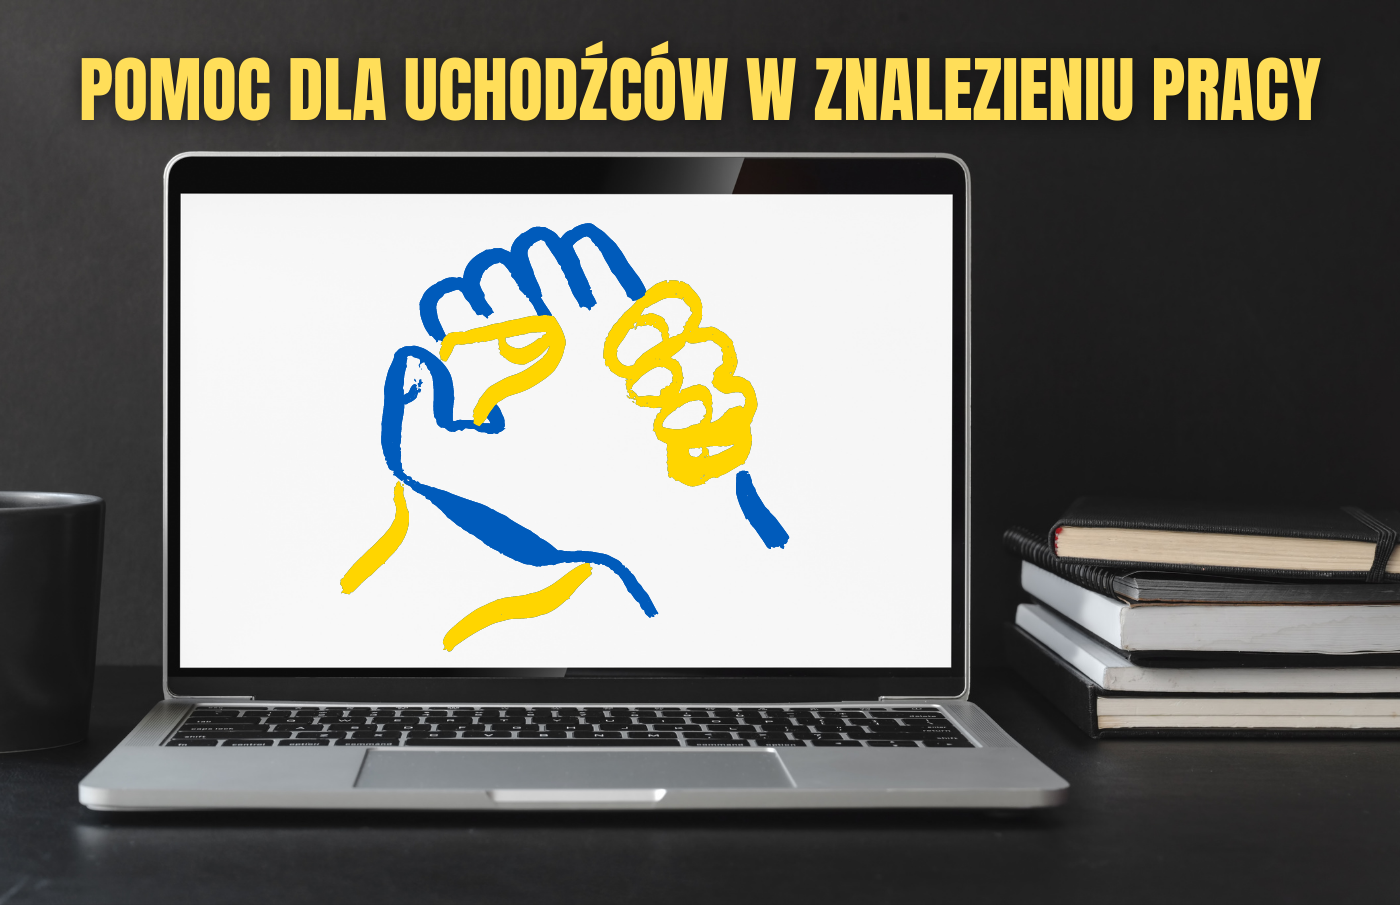 Informazioni per i cittadini ucraini sull'assunzione del lavoro in Polonia